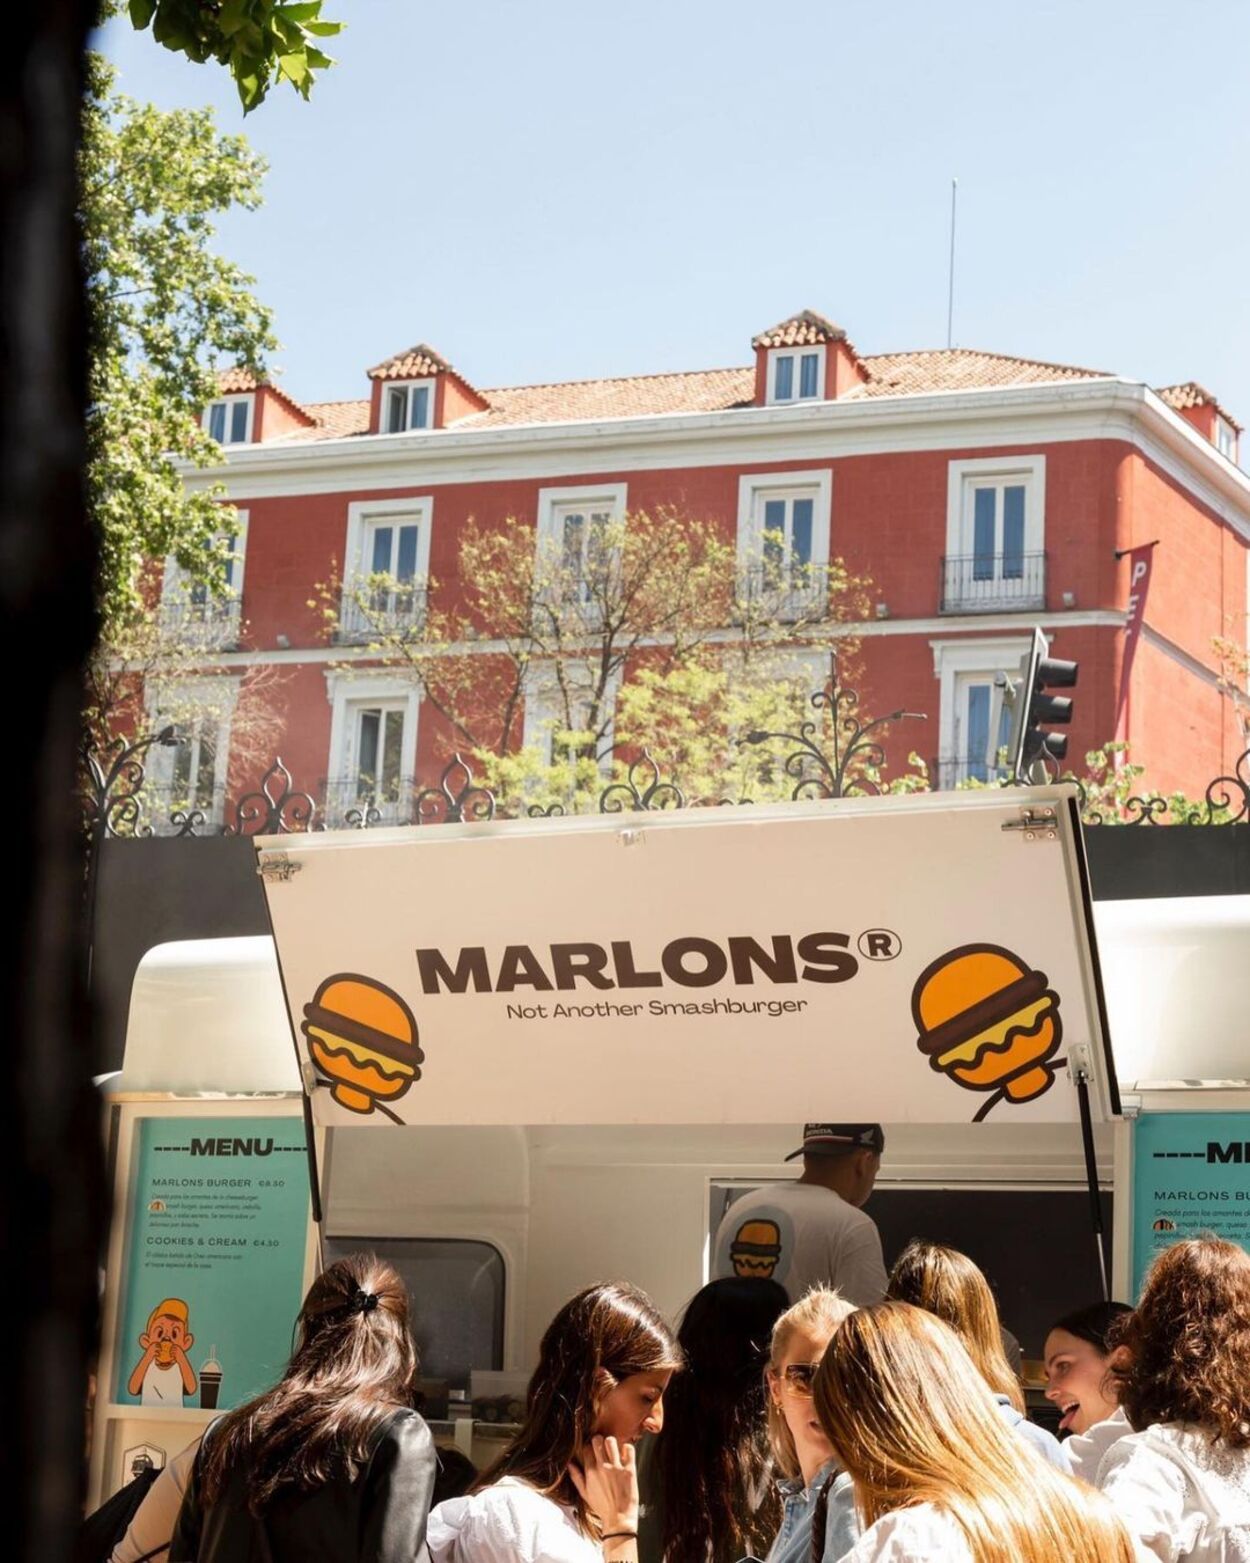 Madrid se posiciona como el epicentro de las 'Smash Burgers' con Marlons y VICIO a la cabeza